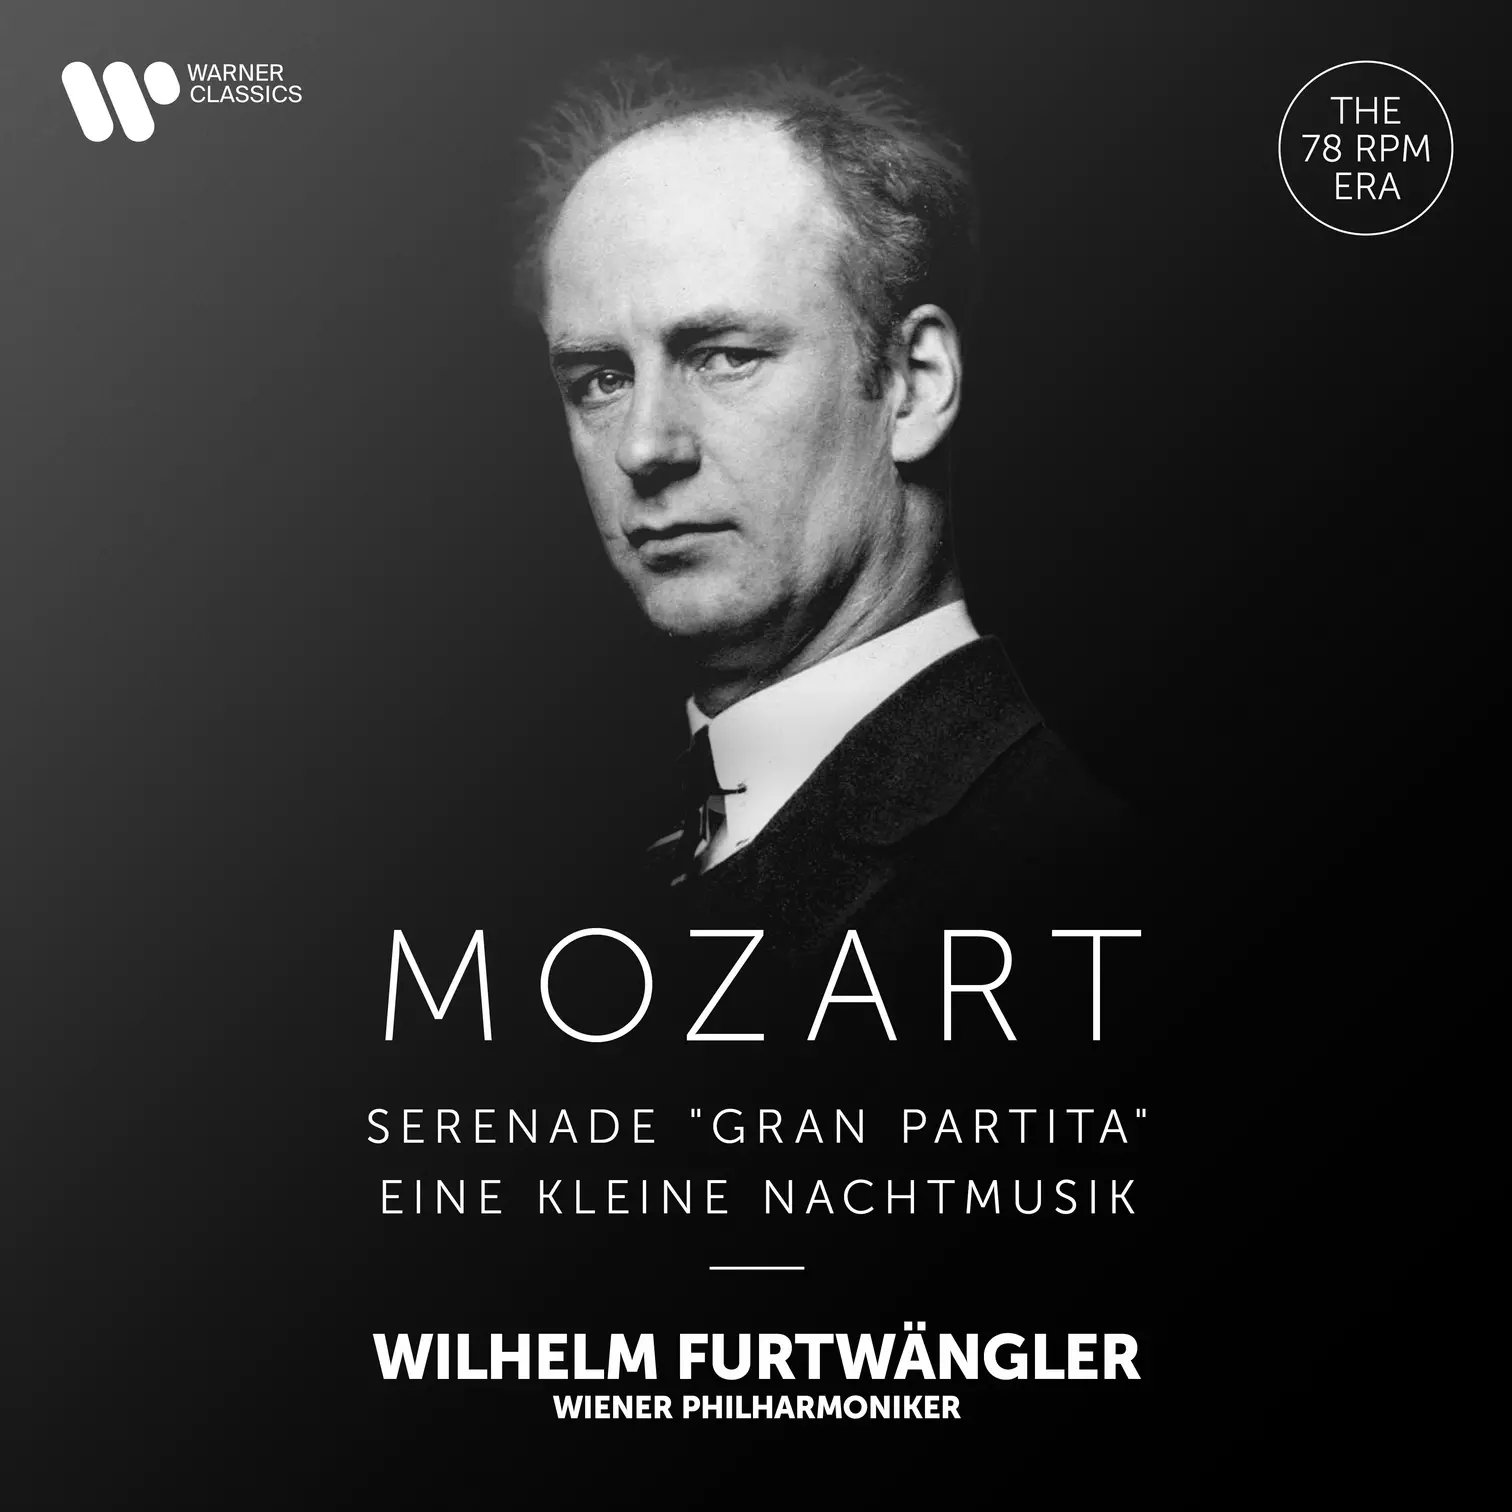 Mozart: Serenade, K. 361 “Gran partita” & Eine kleine Nachtmusik, K. 525